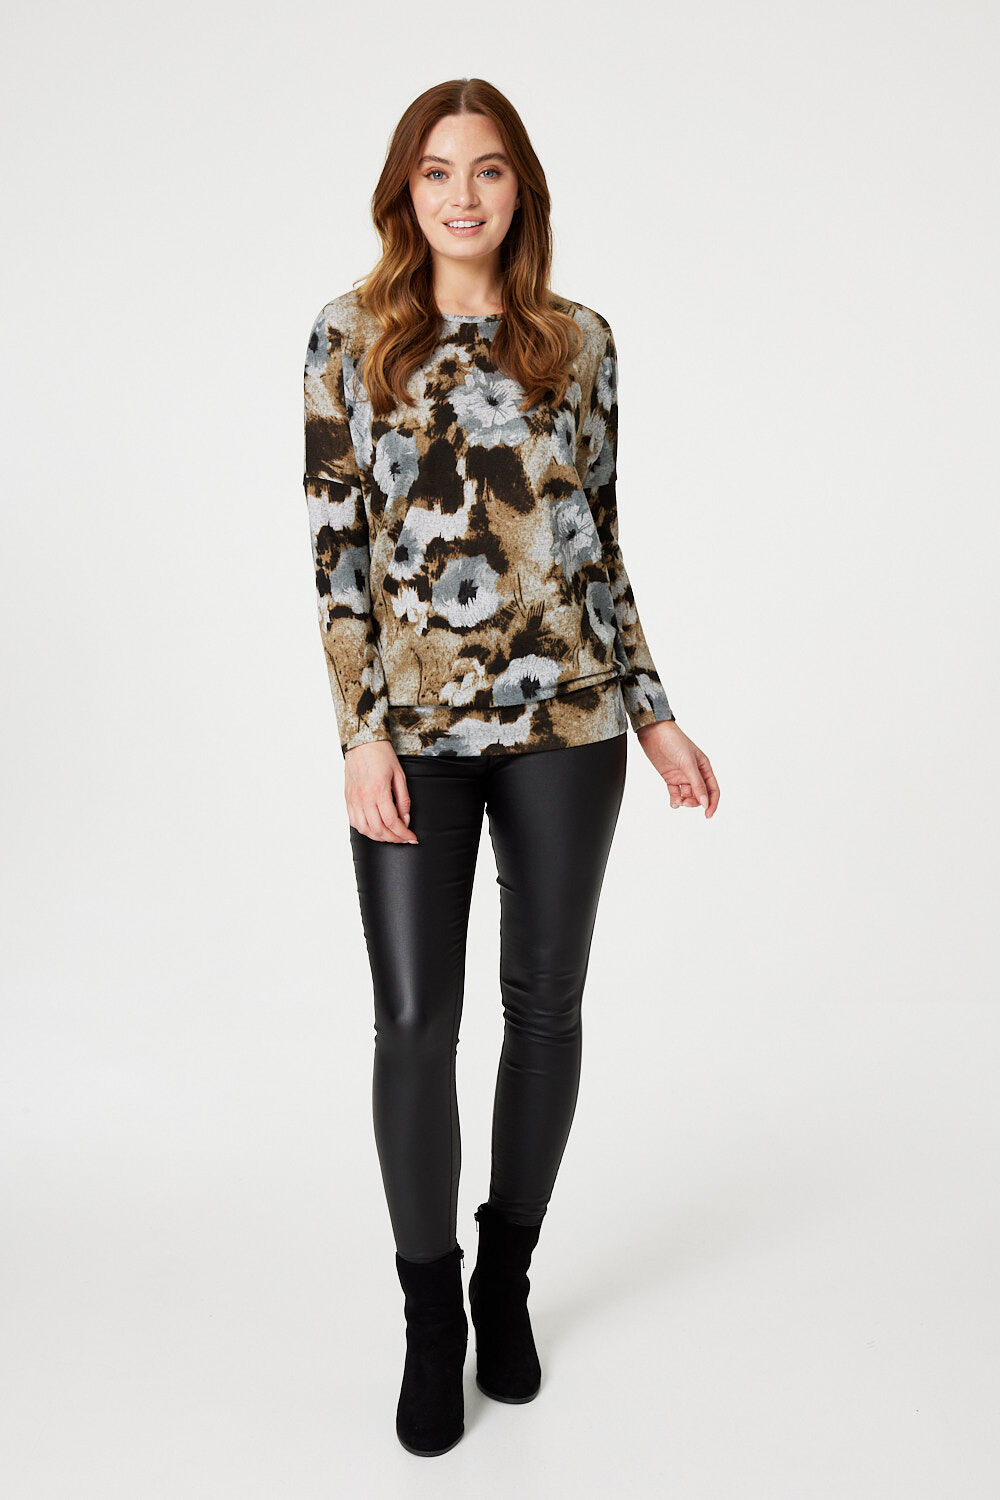 Izabel London Beige - Floral Long Sleeve Sweatshirt, Size: 8